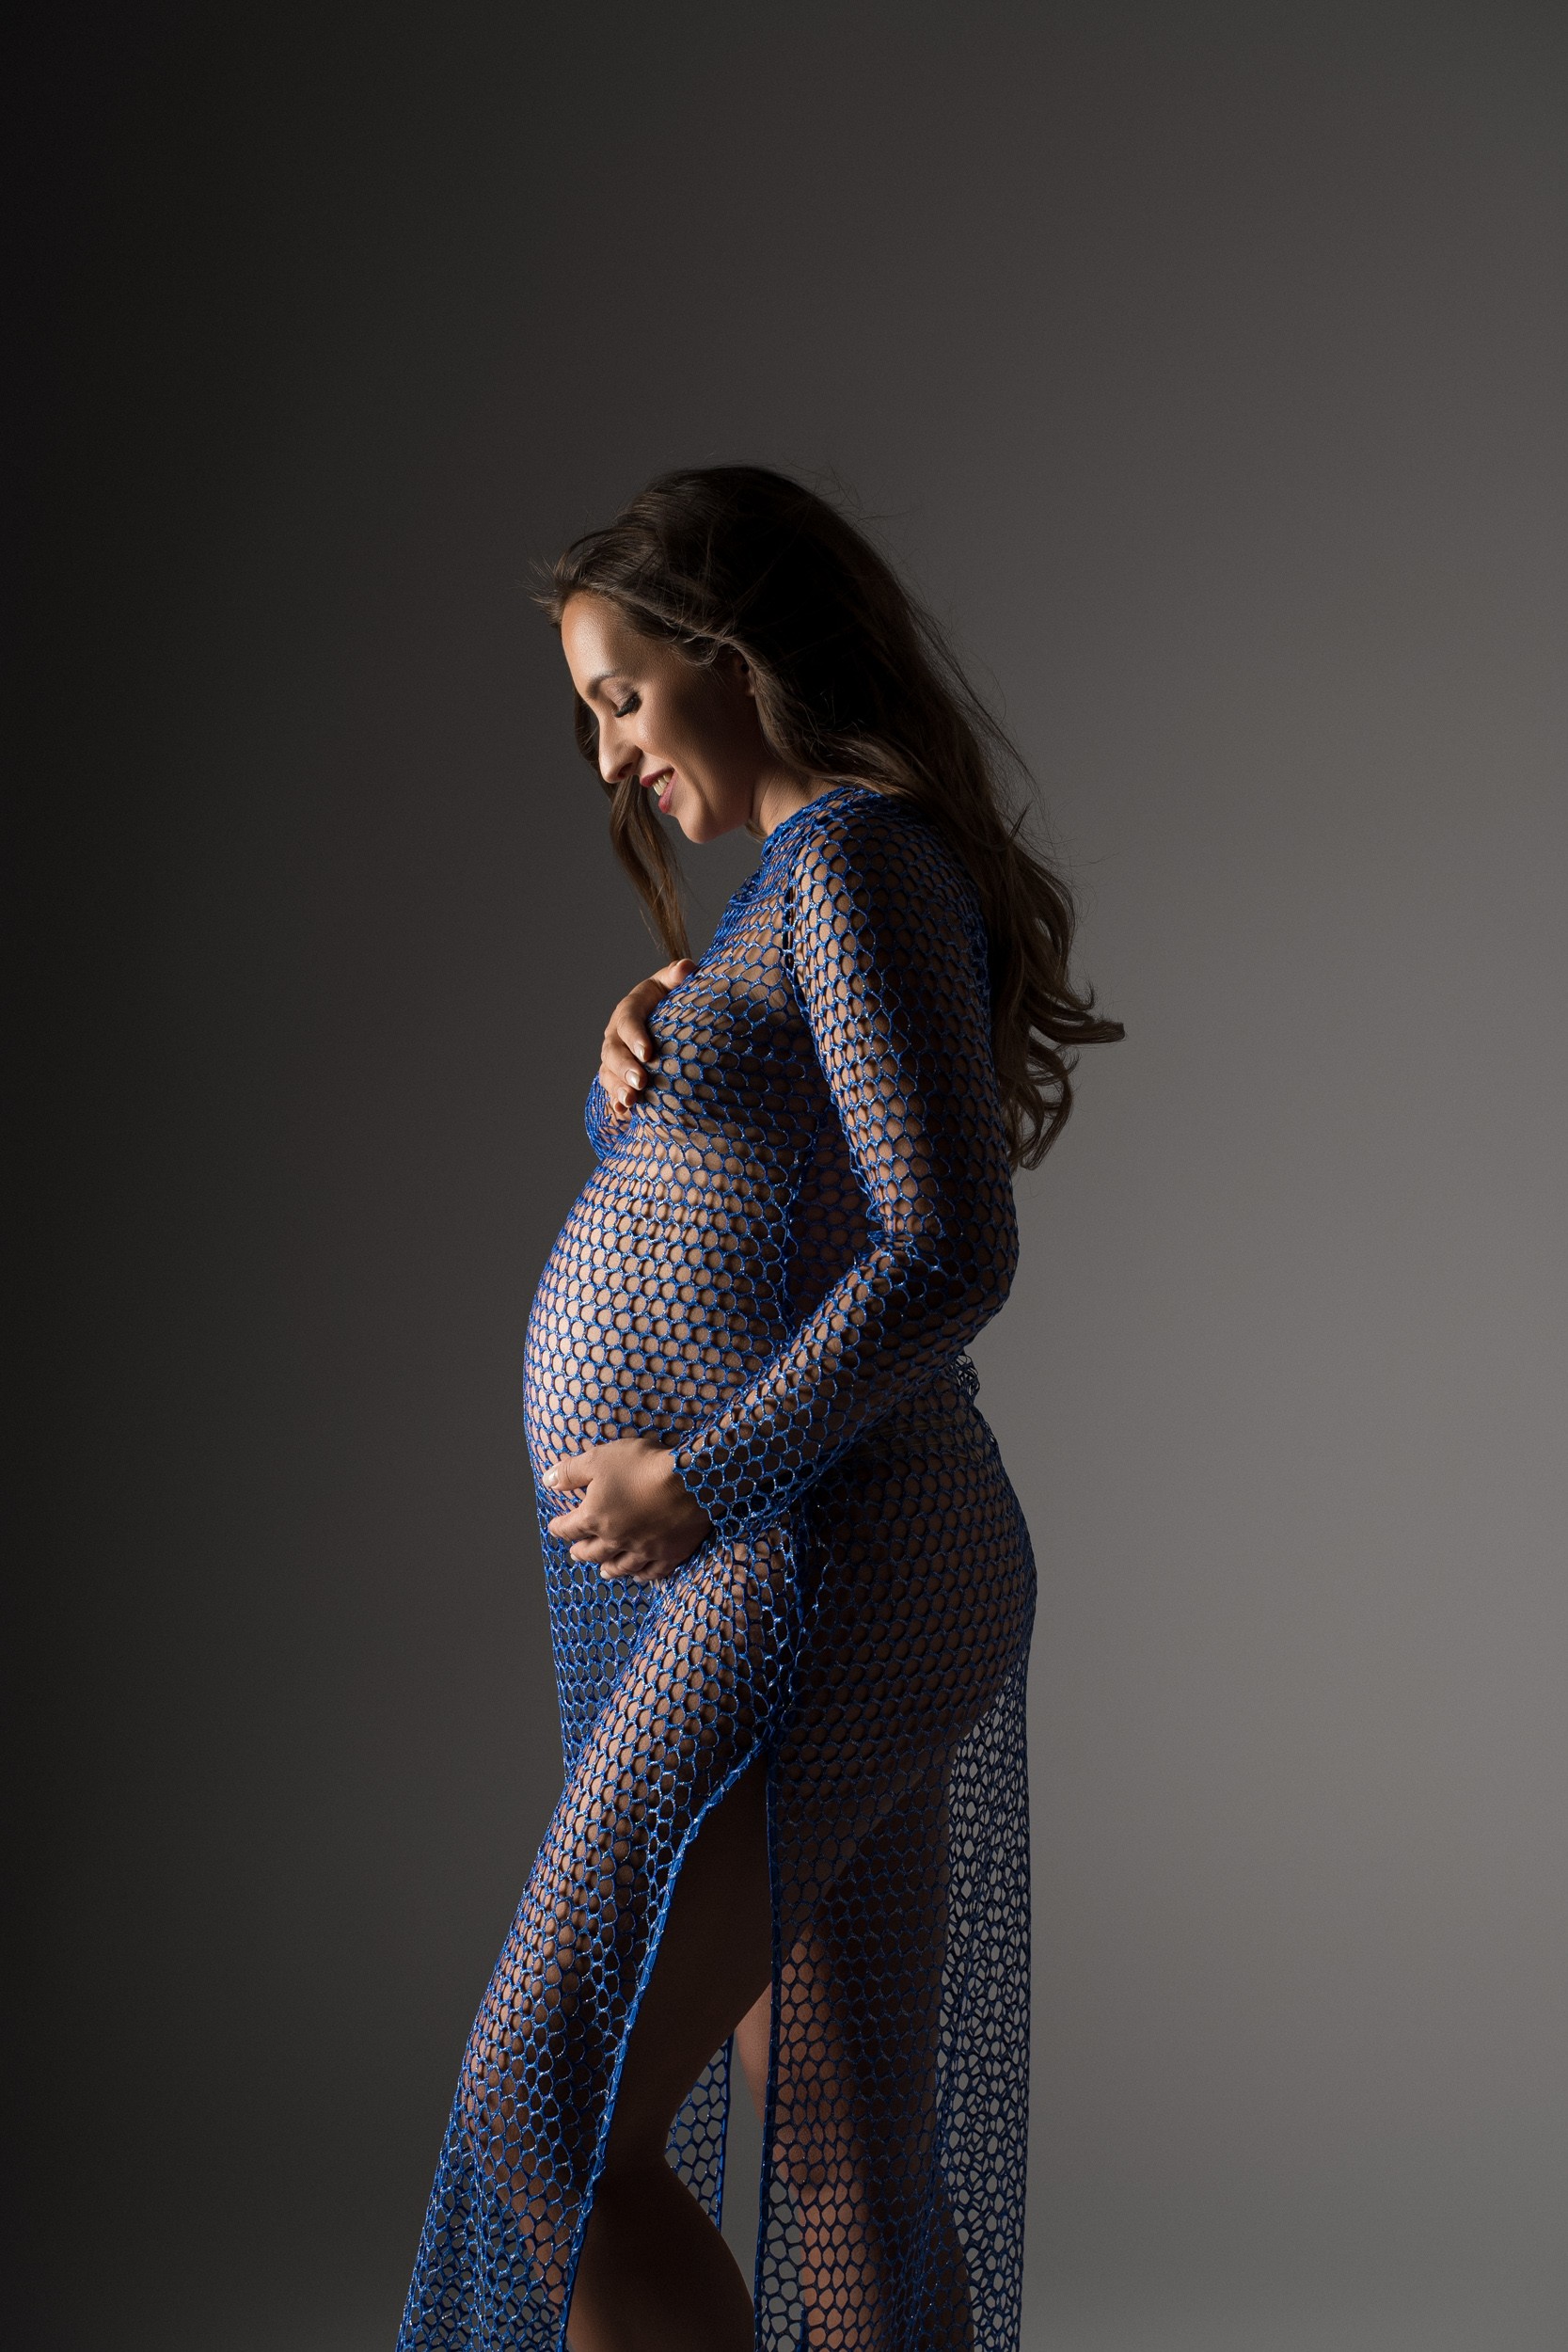 Stilno fotografiranje nosečnice v foto studiu na temnem ozadju